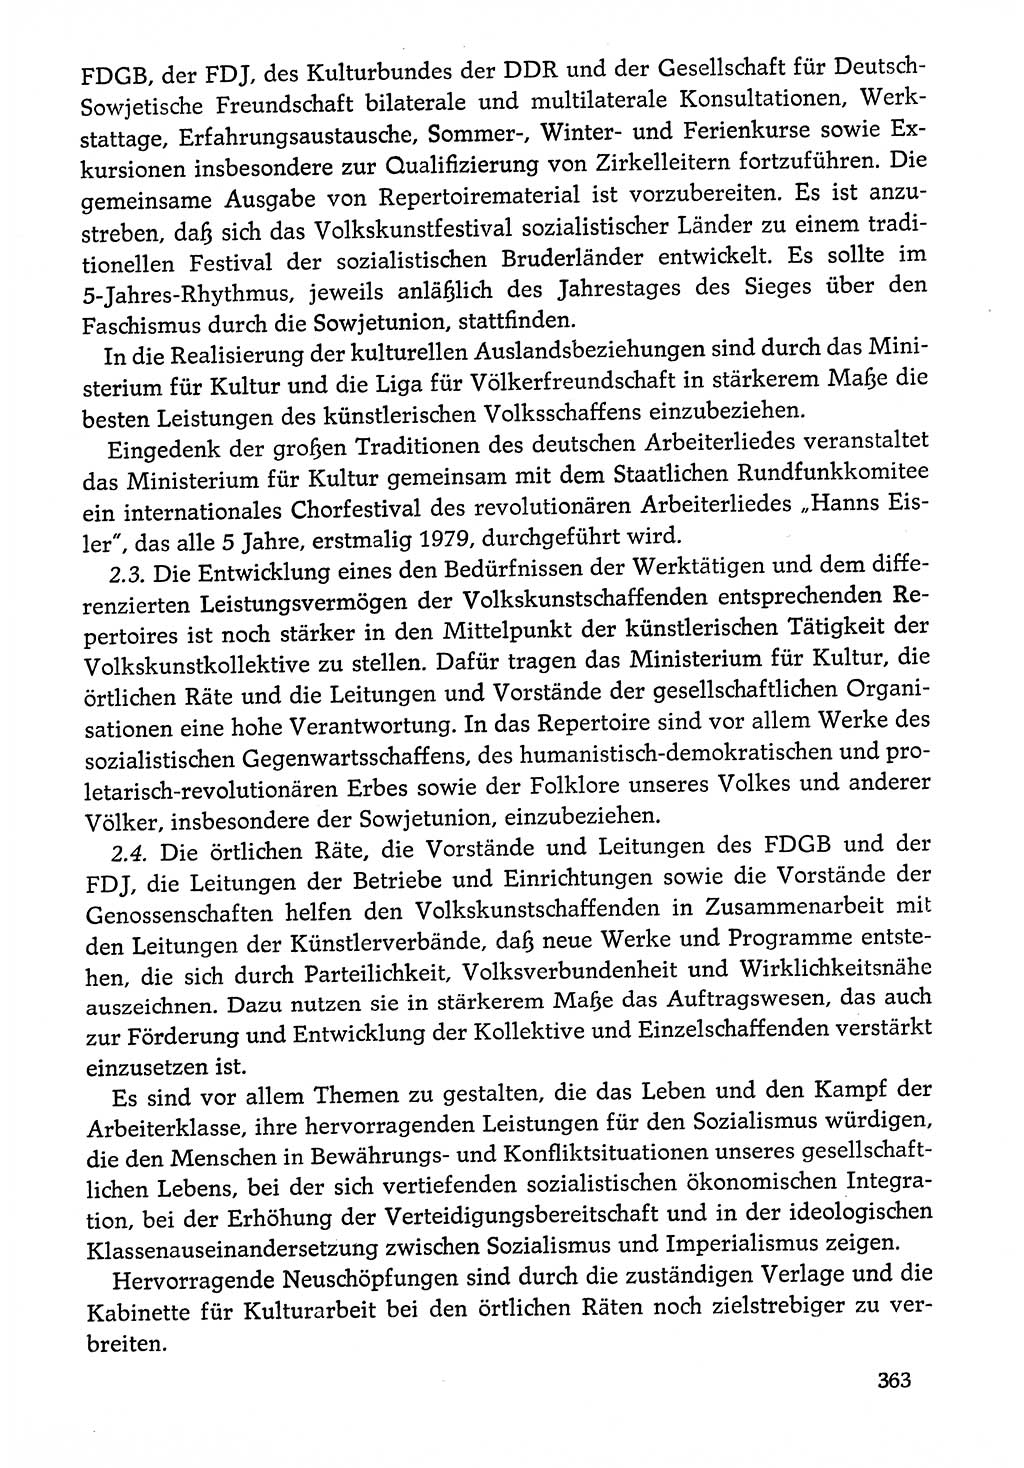 Dokumente der Sozialistischen Einheitspartei Deutschlands (SED) [Deutsche Demokratische Republik (DDR)] 1976-1977, Seite 363 (Dok. SED DDR 1976-1977, S. 363)